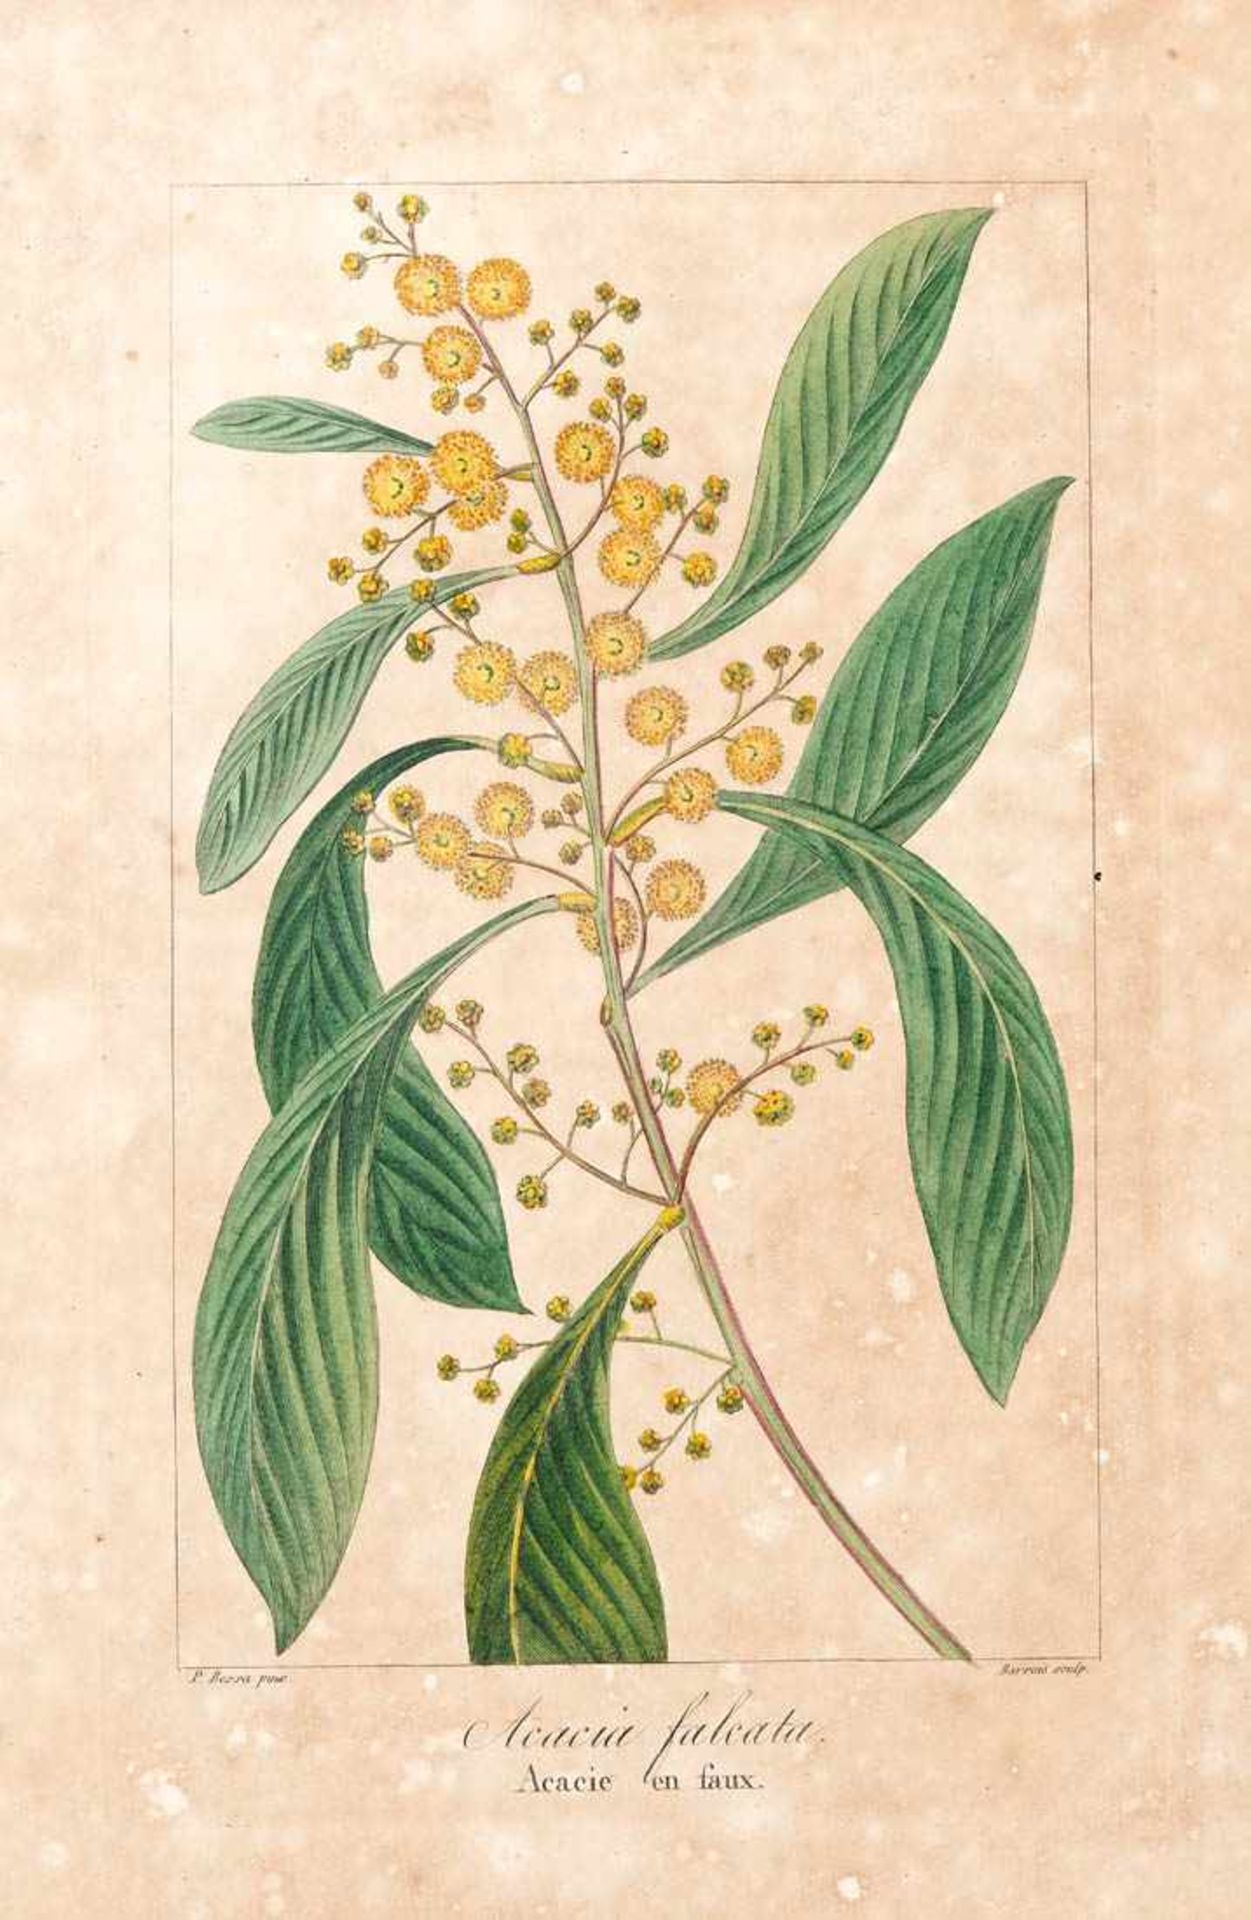 Bessa, Pancrace, 1772 - 1846 Schüler von Redouté. Fünf kolorierte Pflanzenstiche aus "Nouveau